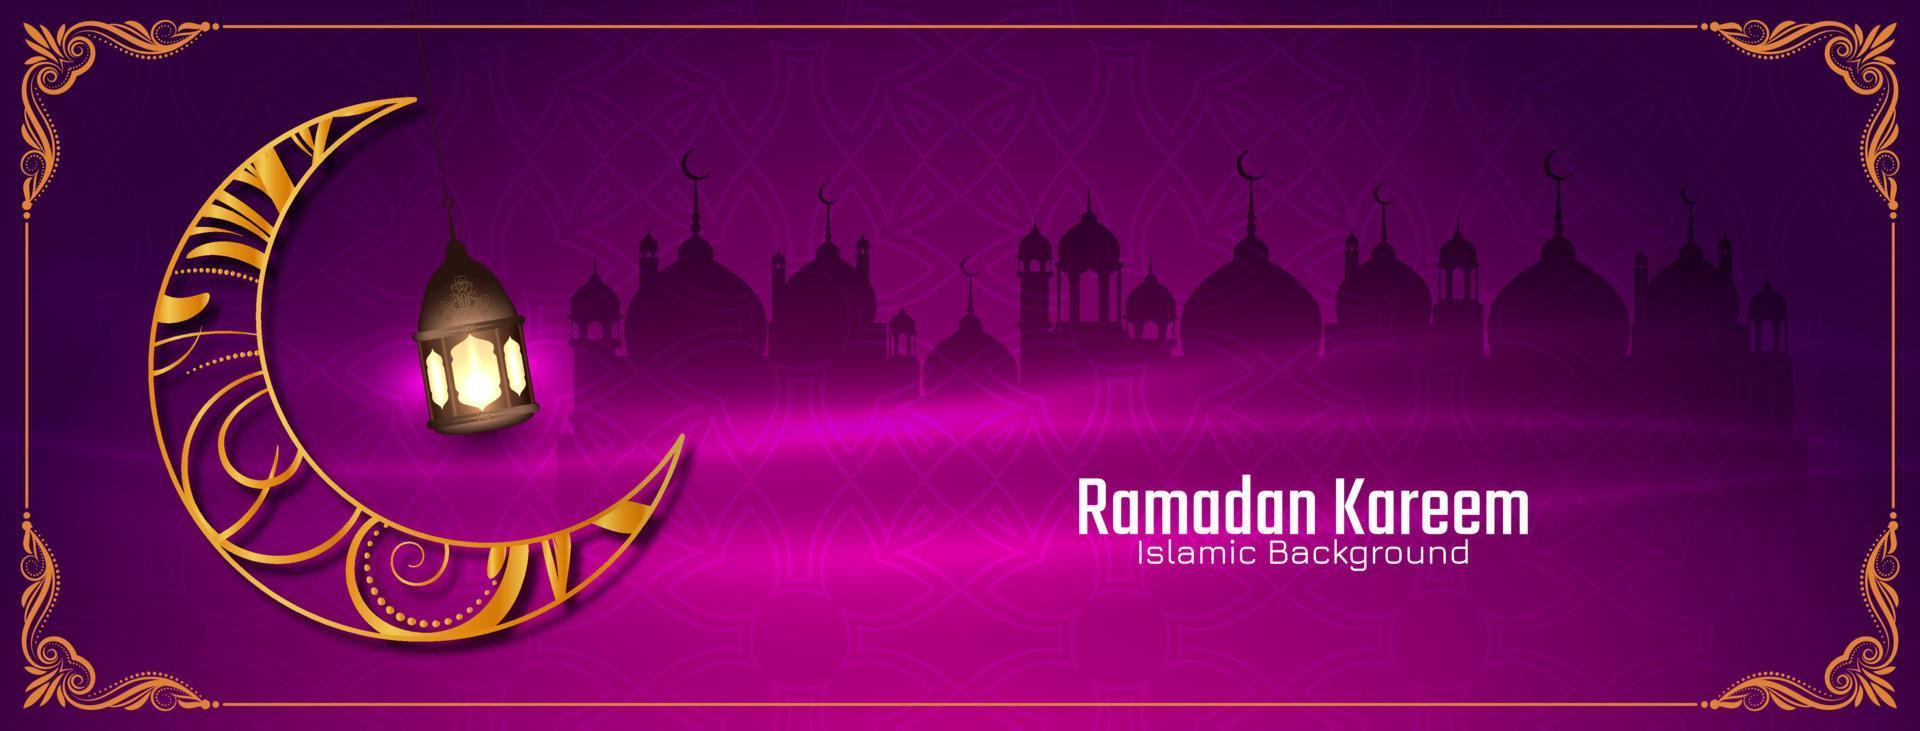 religiös ramadan kareem islamisk festival hälsning banner med moskén vektor